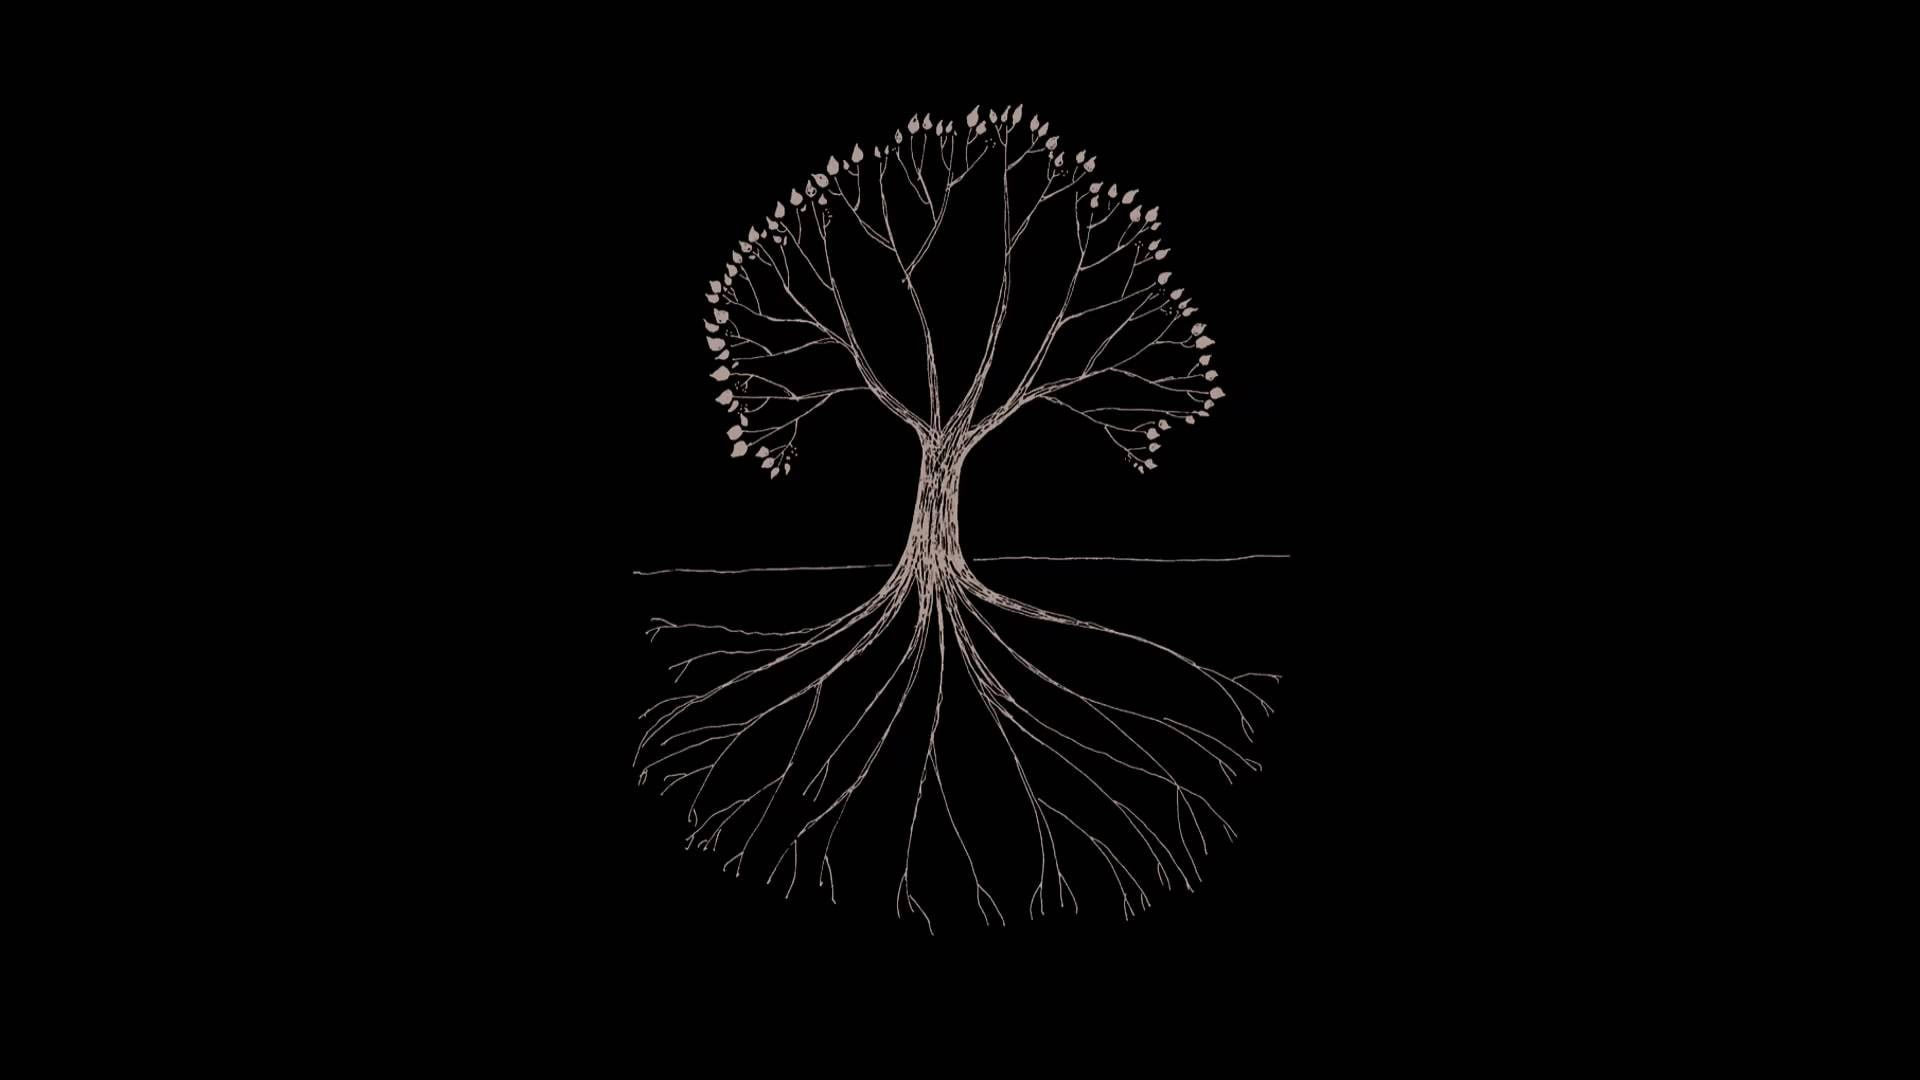 Tree illustration wallpaper, Gojira, minimalism